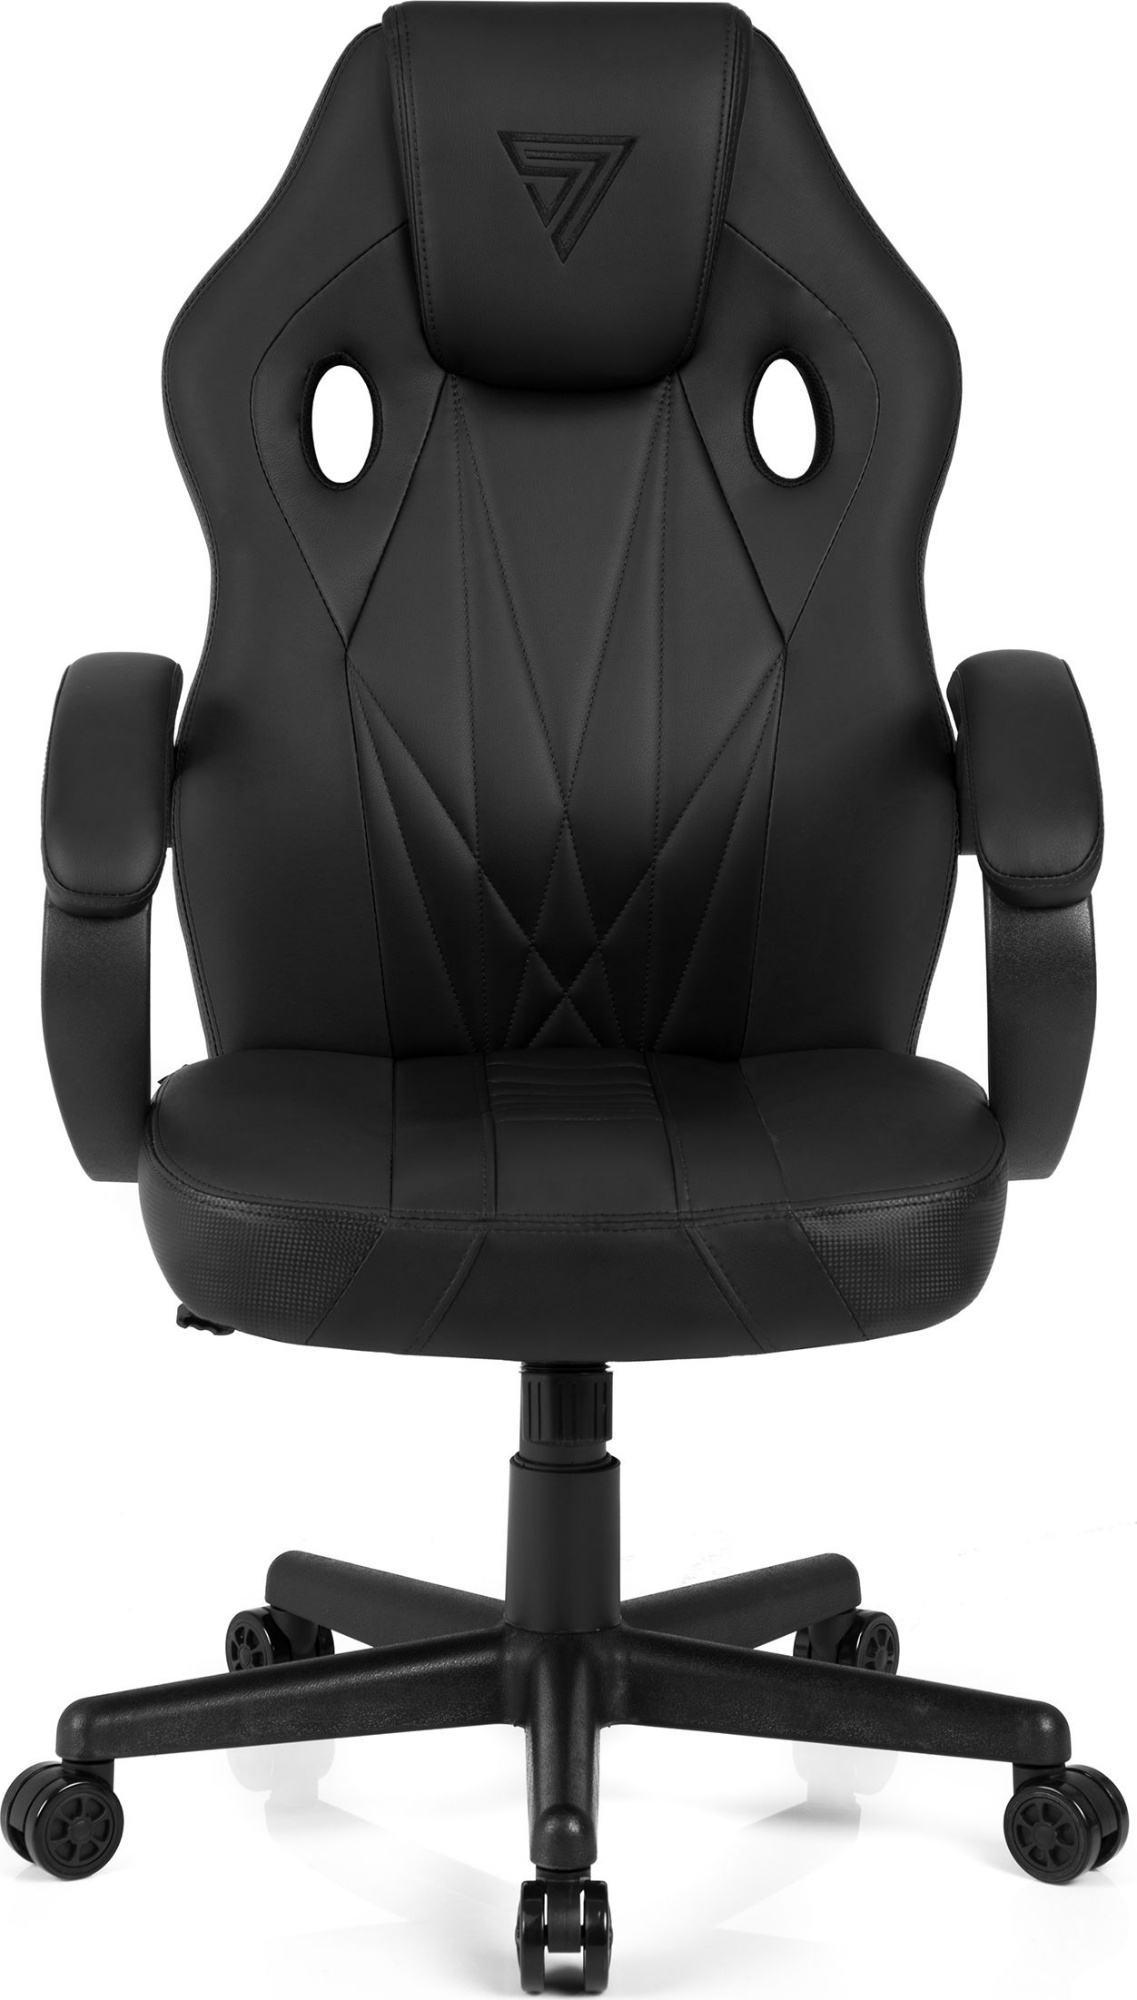 Геймерское кресло SENSE7 Prism Black,  по выгодной цене с .